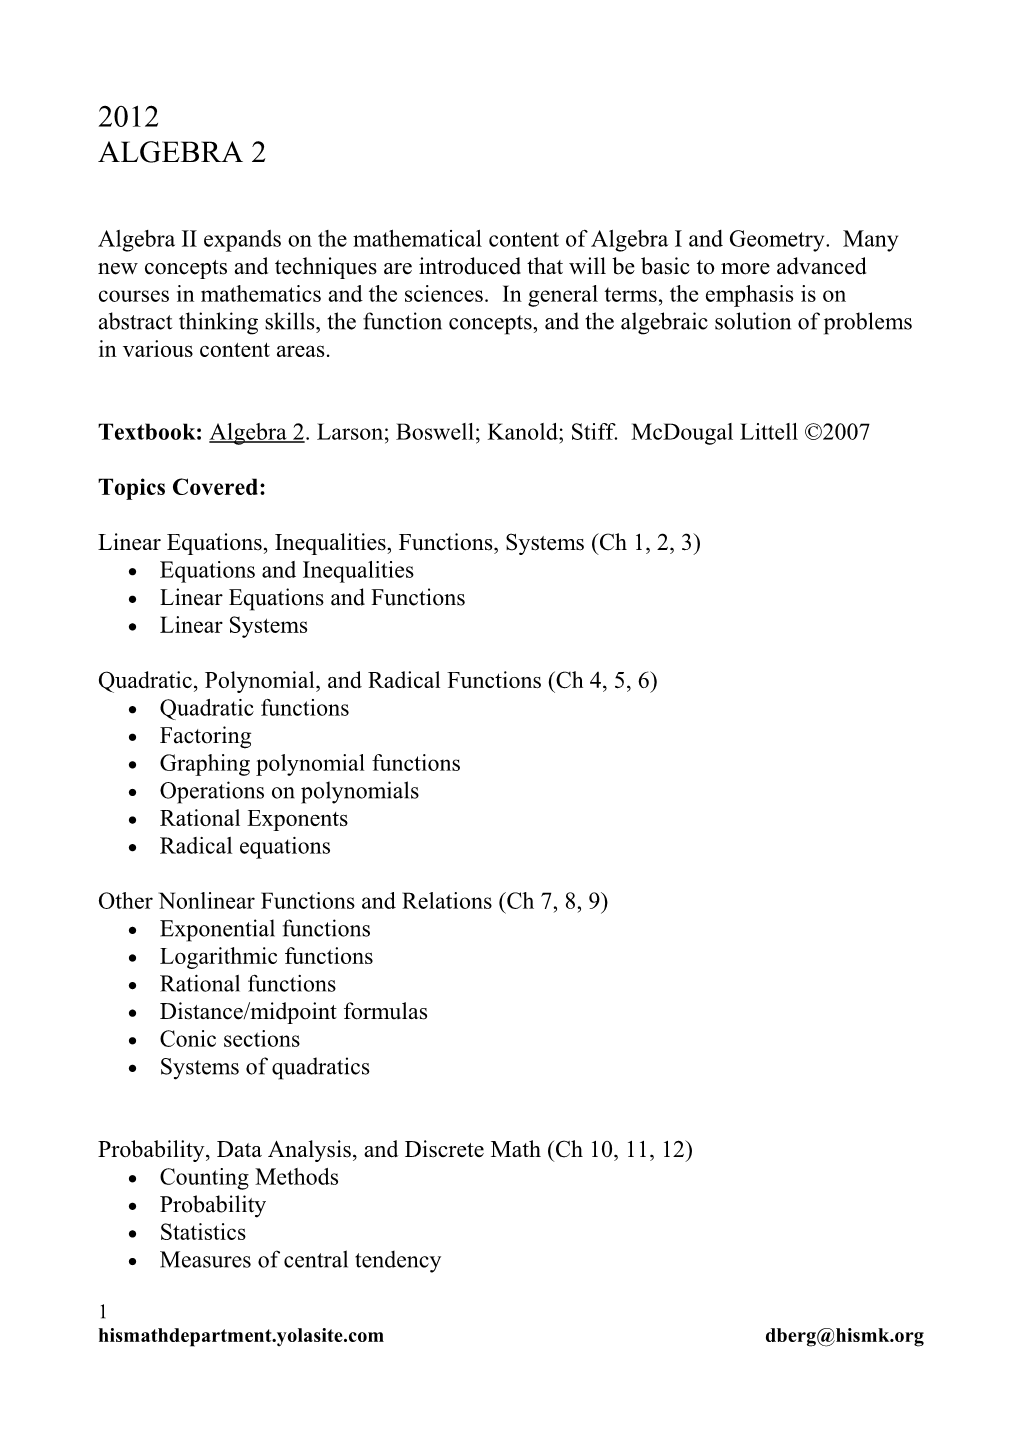 Textbook: Algebra 2. Larson; Boswell; Kanold; Stiff. Mcdougal Littell 2007